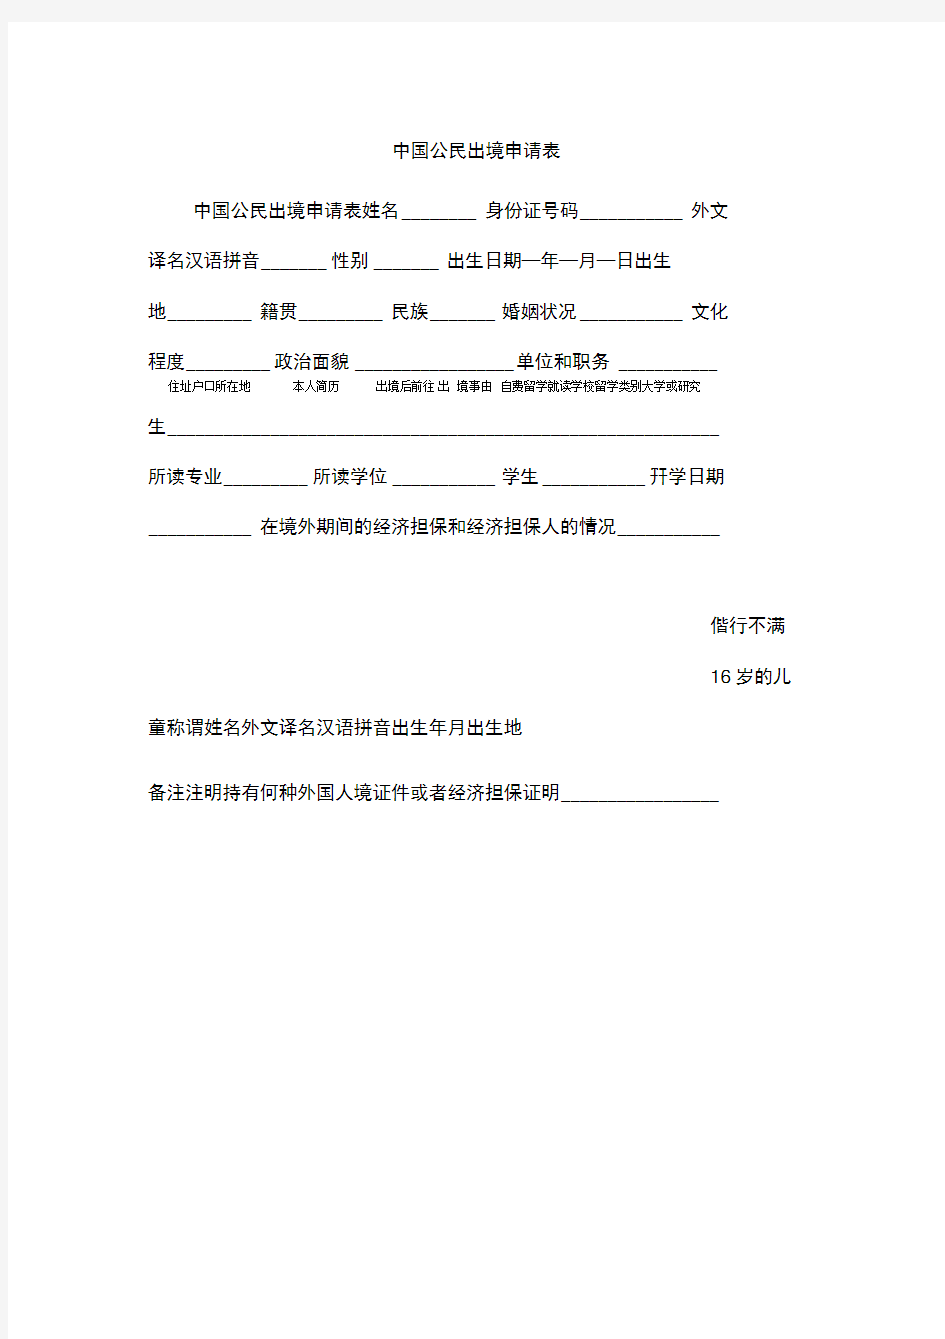 中国公民出境申请表